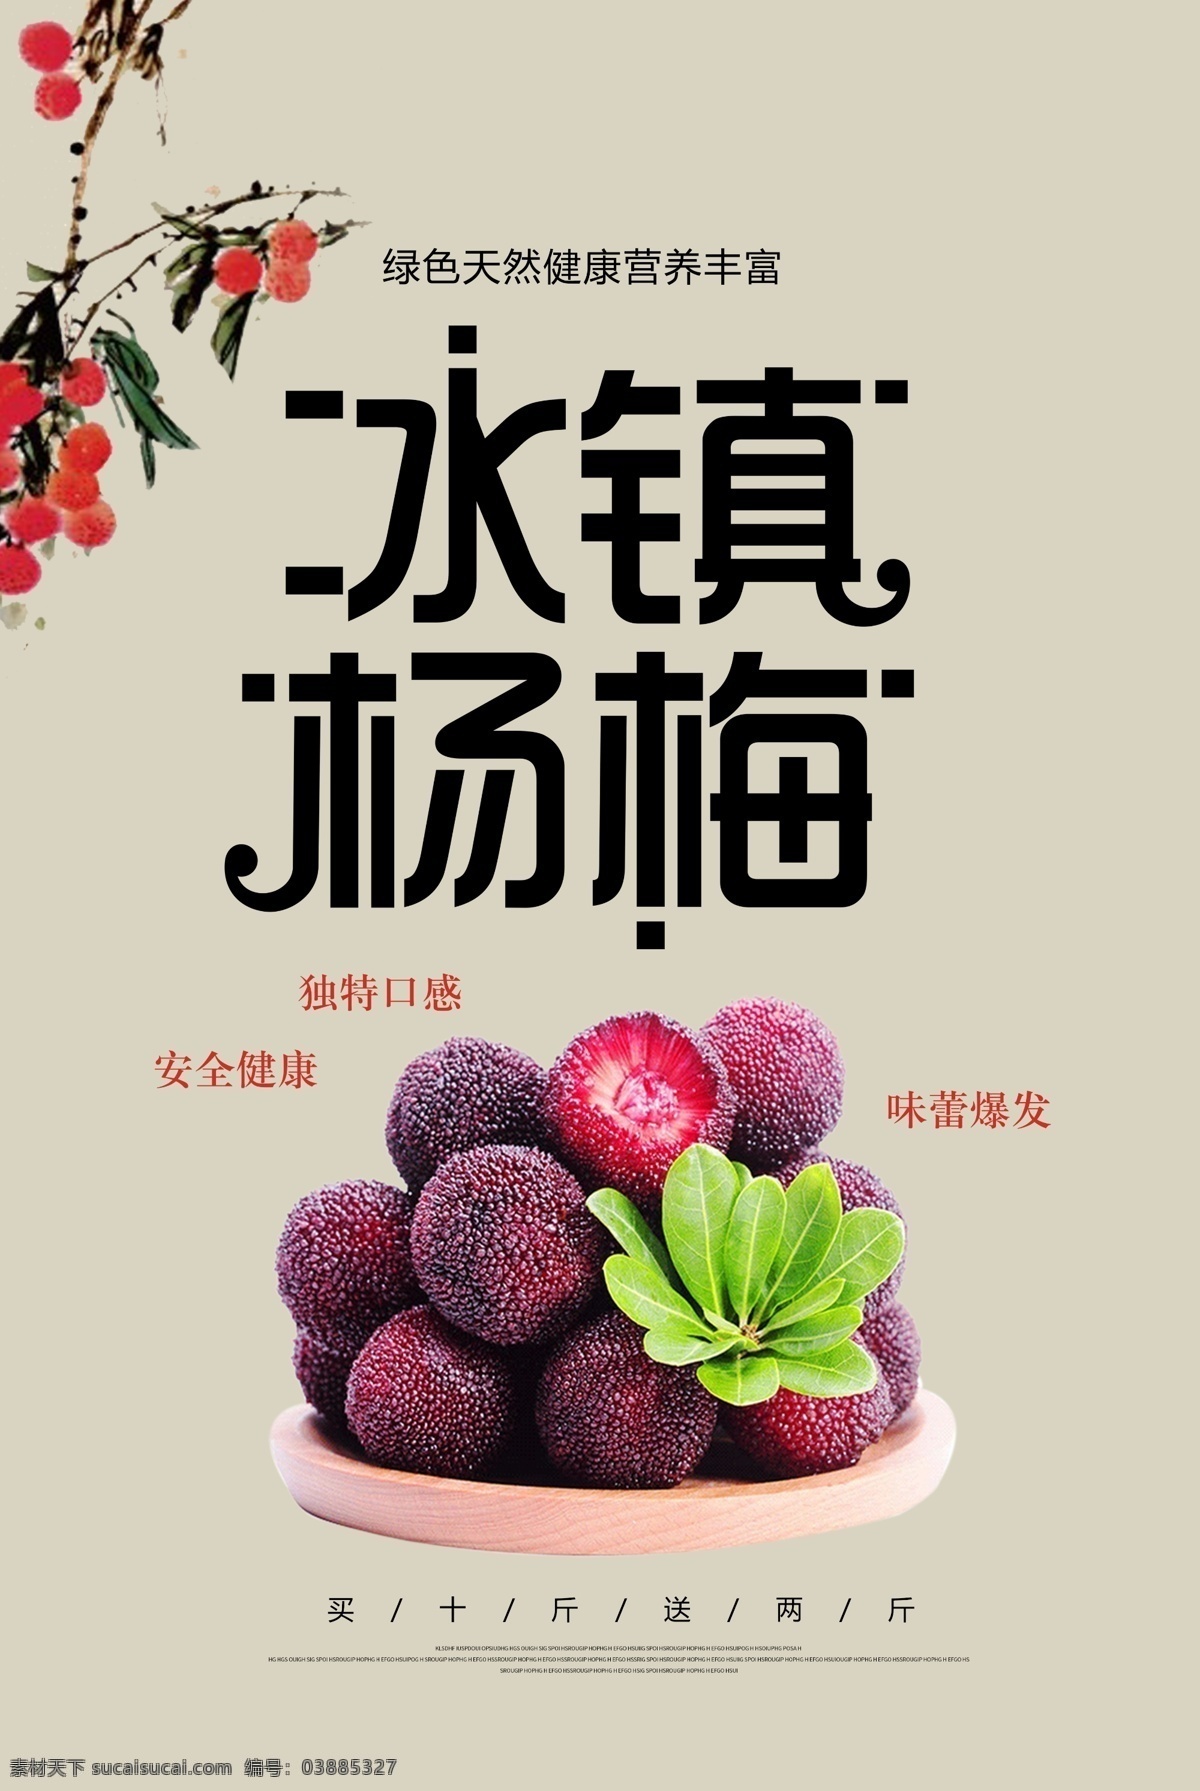 杨梅海报 杨梅展板 水果海报 新鲜水果 杨梅熟了 冰镇杨梅 海报